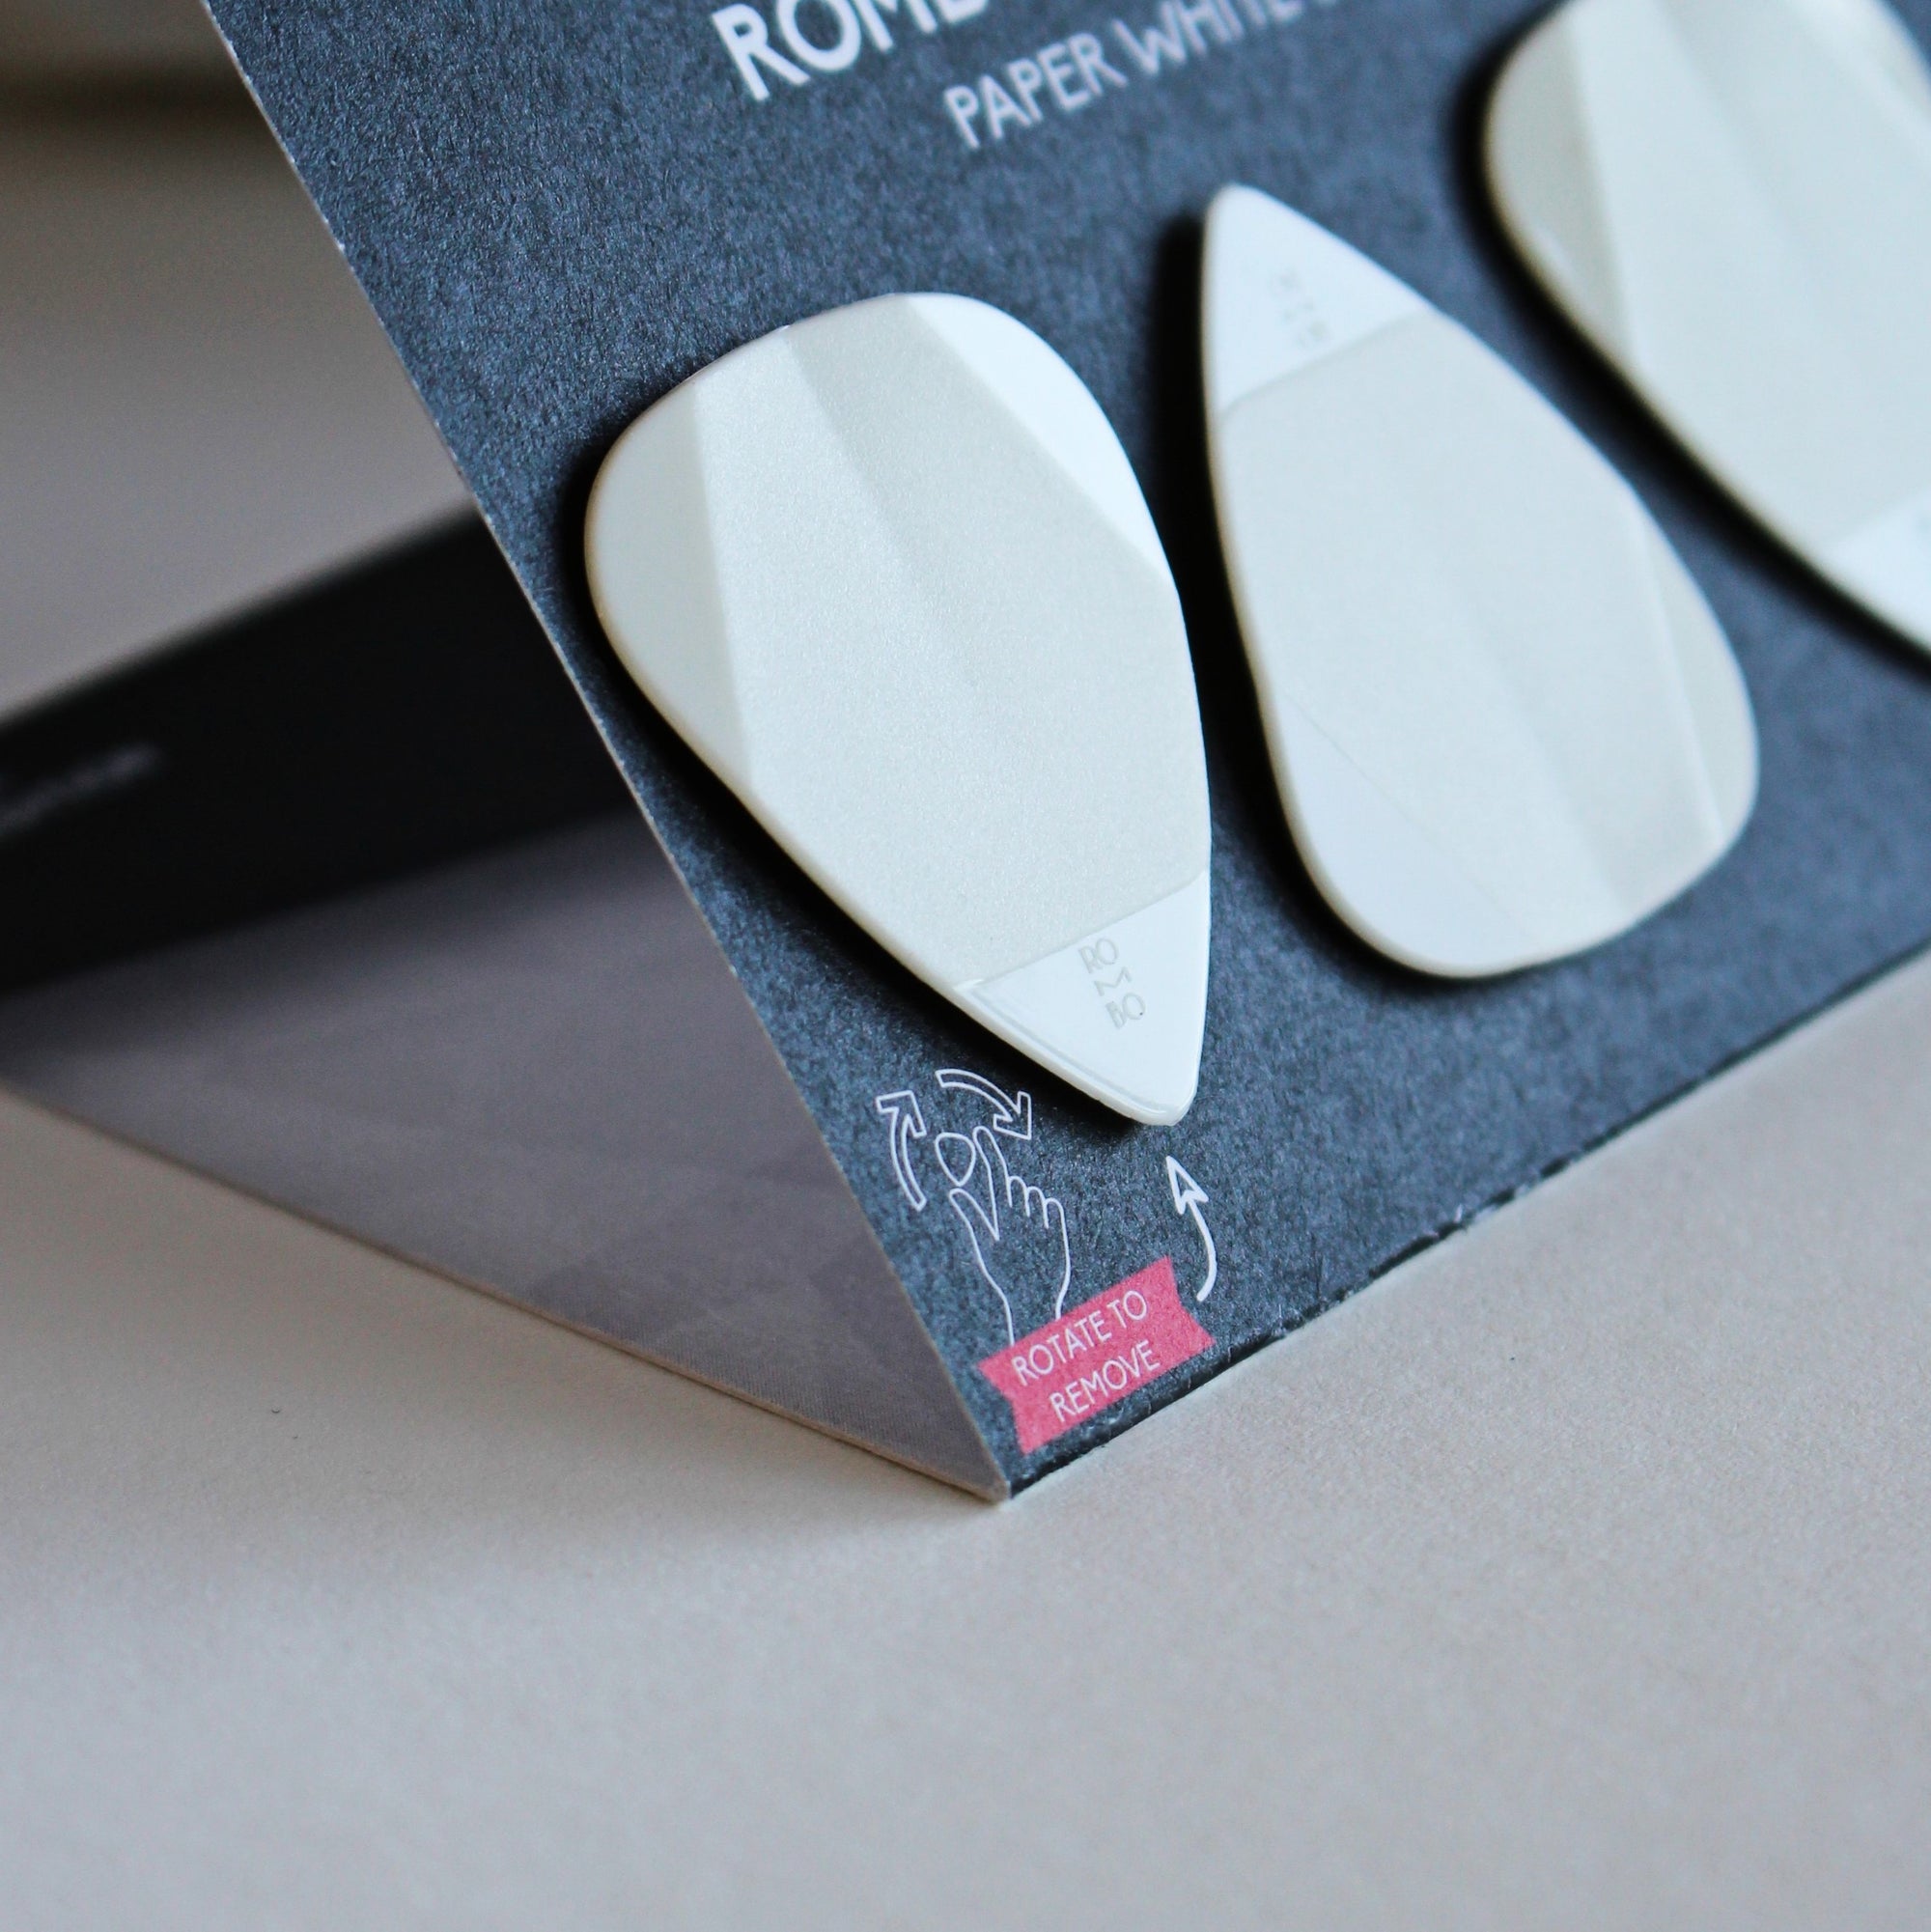 guitar-pick-medium-thickness-rombo-origami-white